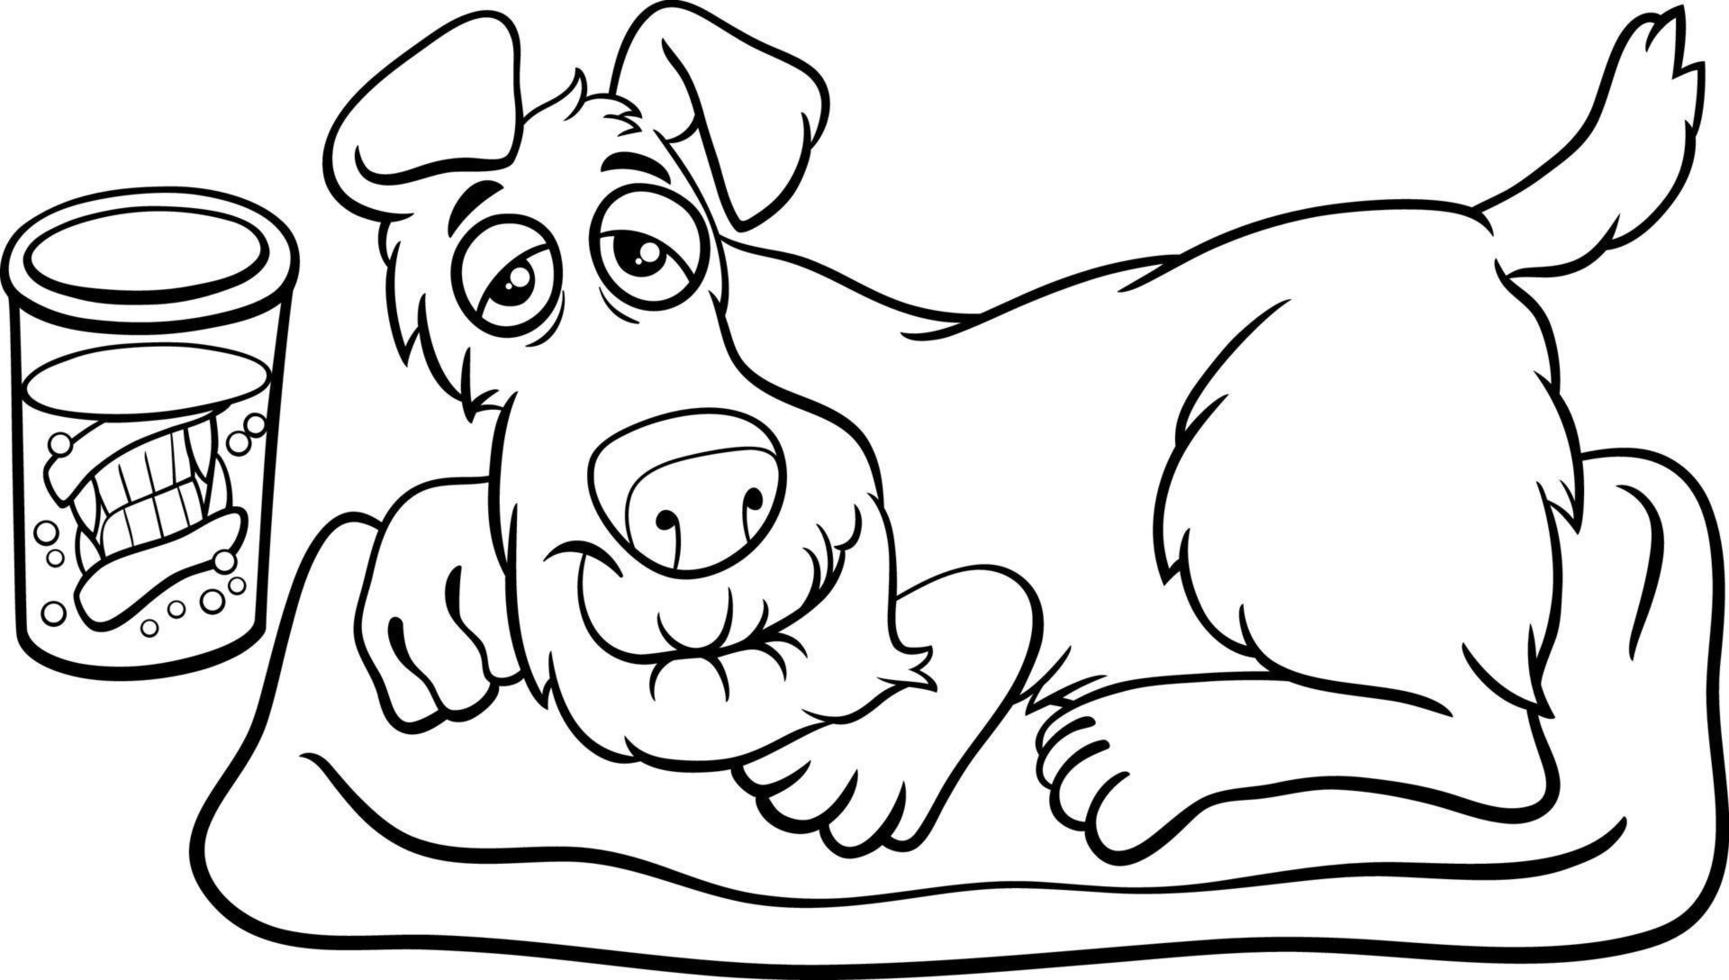 desenho de cachorro sênior de desenho animado com dentaduras em um vidro para colorir vetor